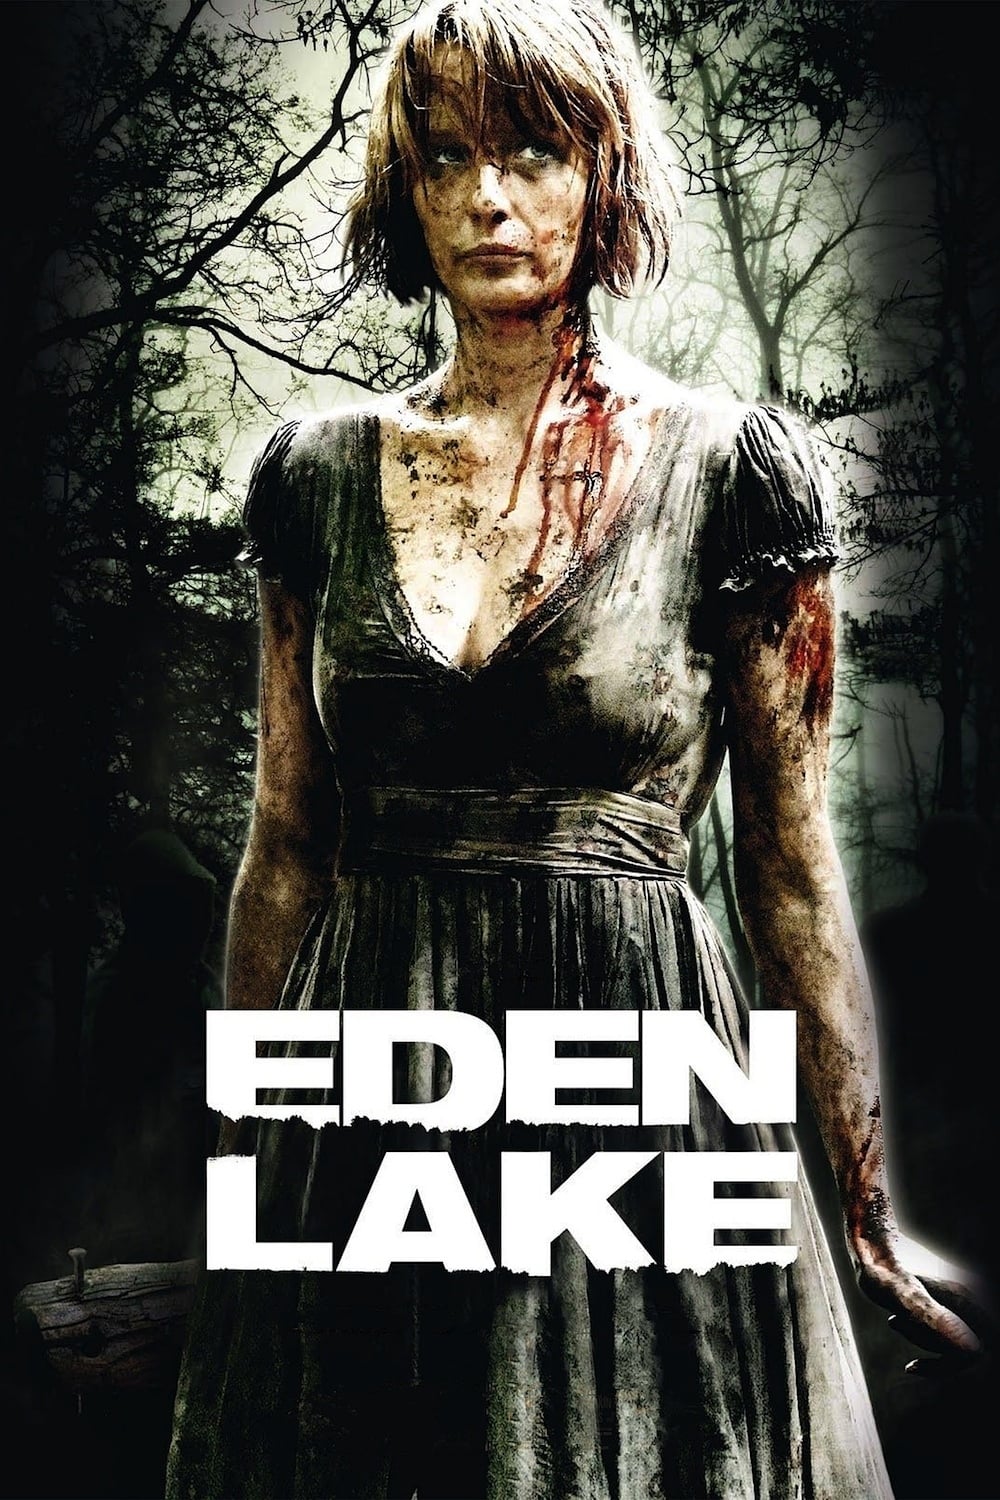 Plakat von "Eden Lake"